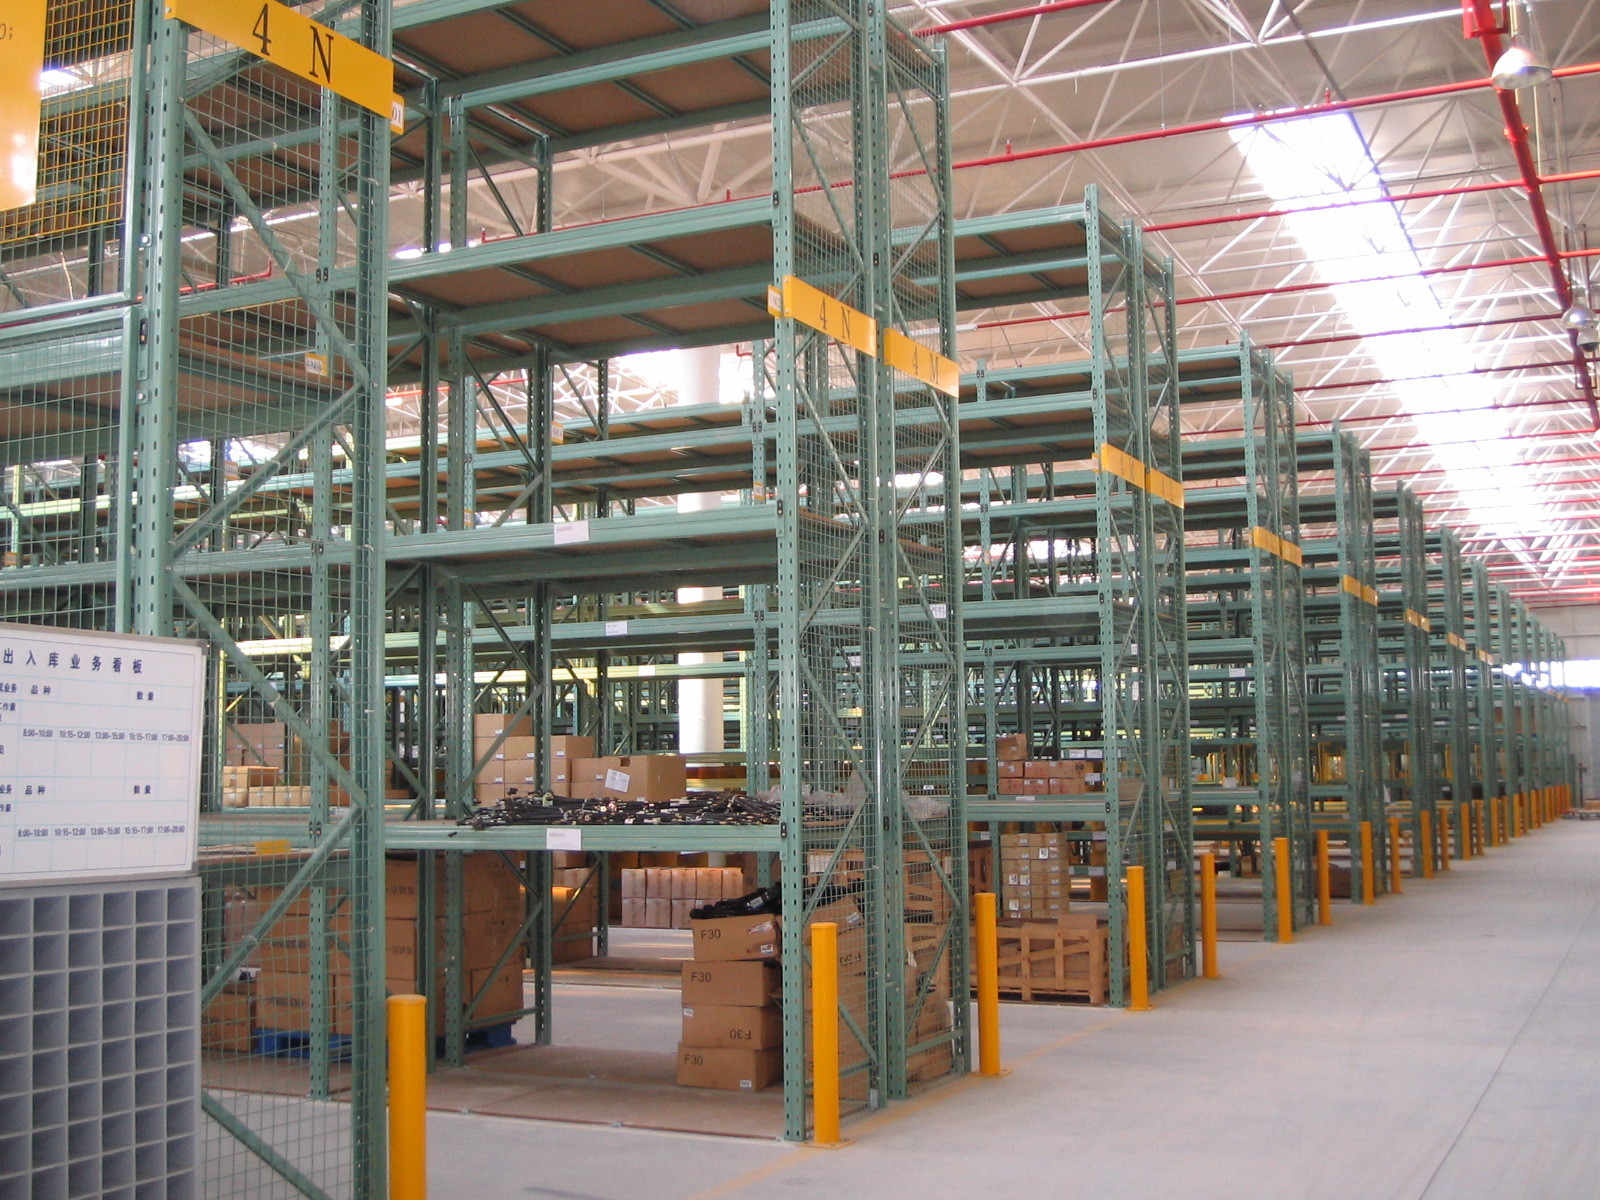 سیستم رکاب پالت سبز سنگین ، قفسه های ذخیره سازی فولاد صنعتی